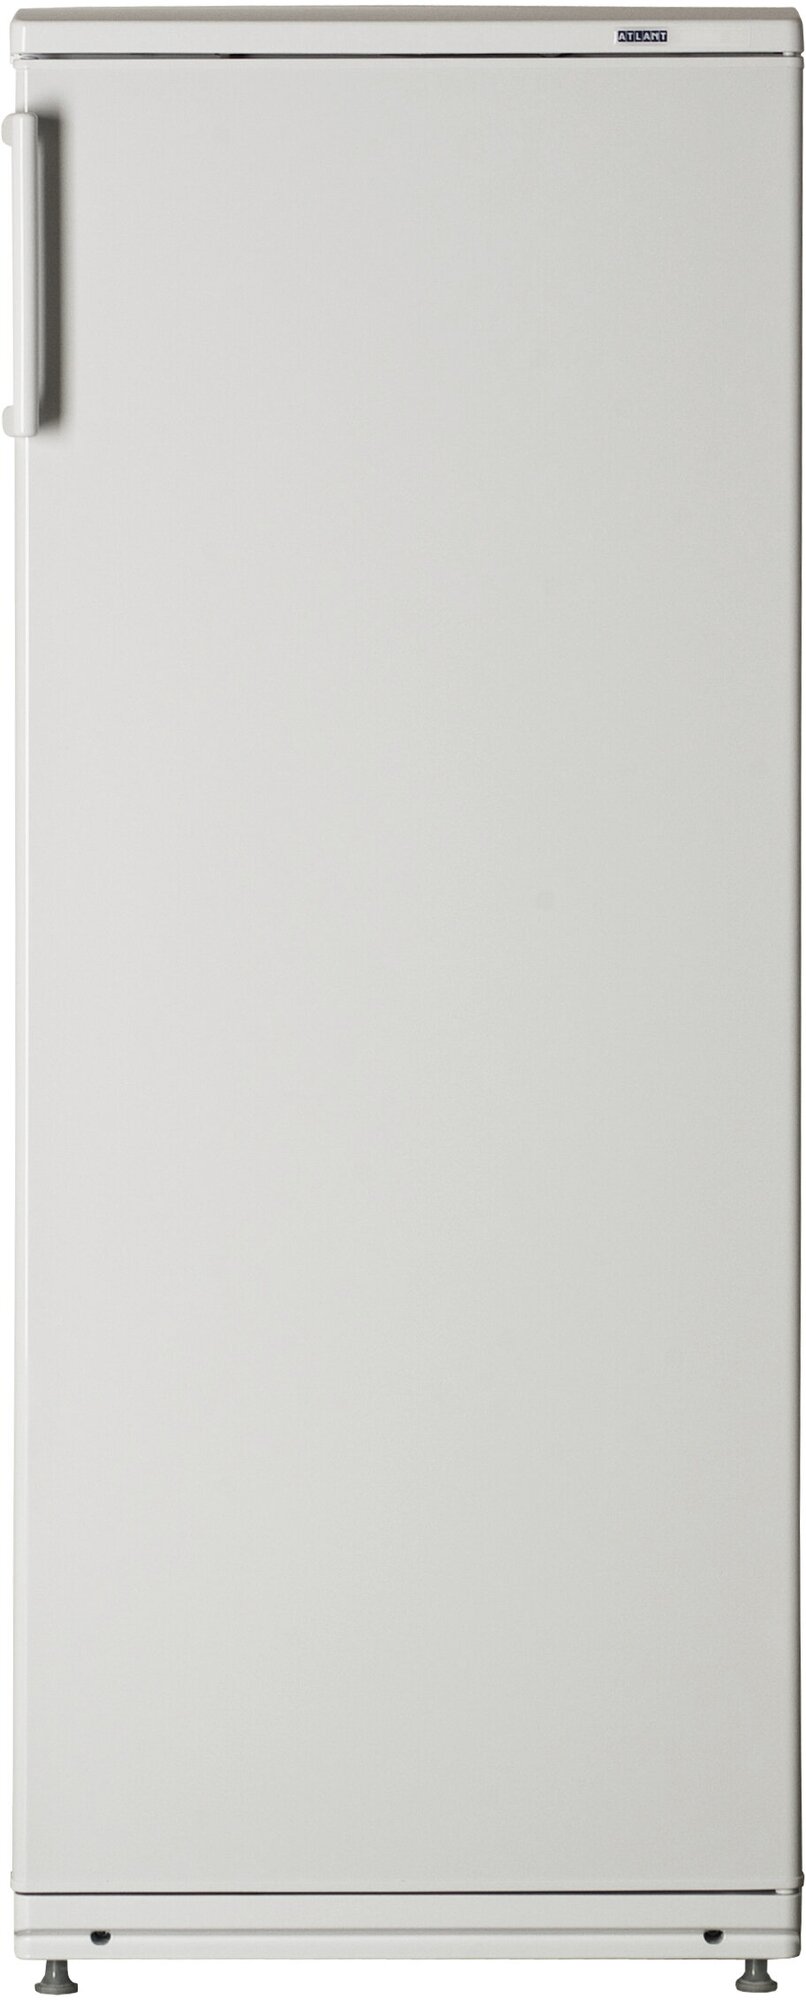 Холодильник Атлант 5810.62